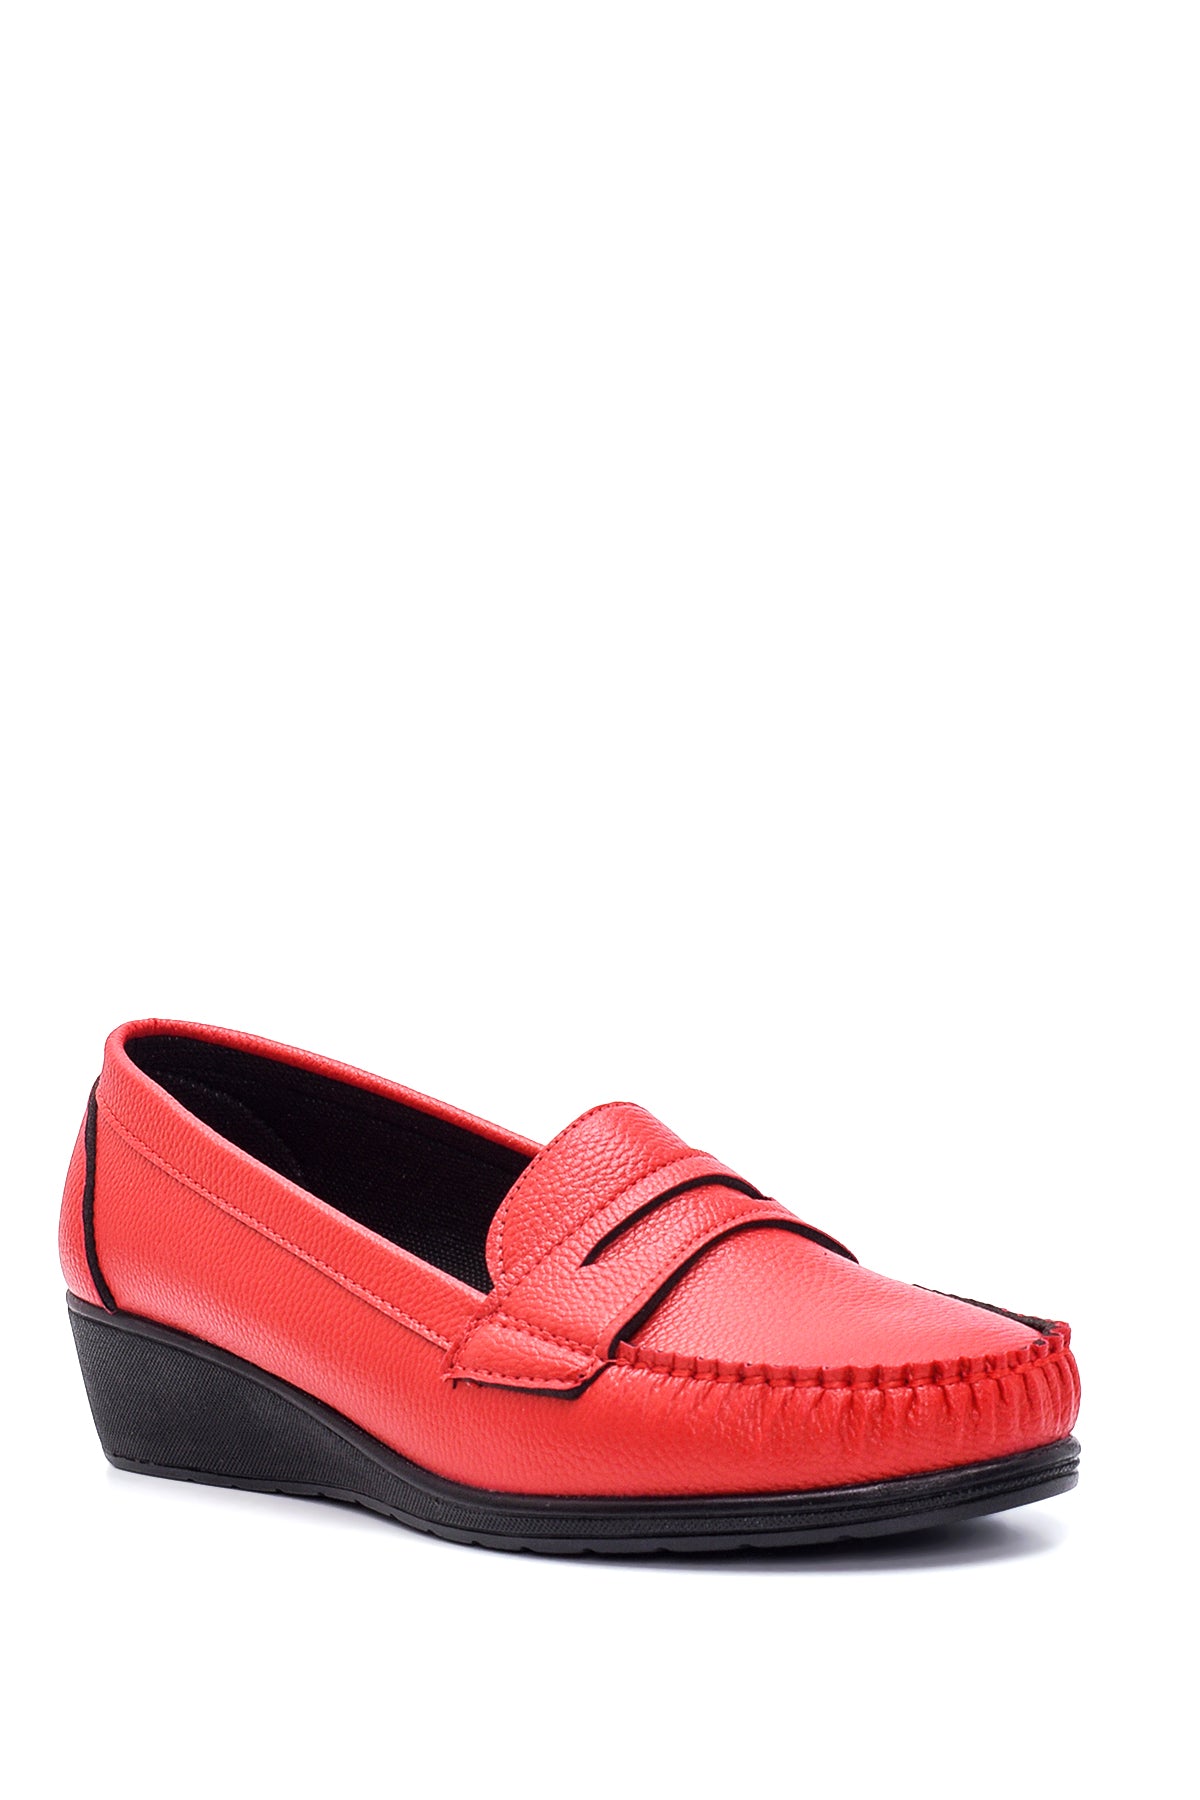 Kadın Kırmızı Dolgu Topuklu Loafer